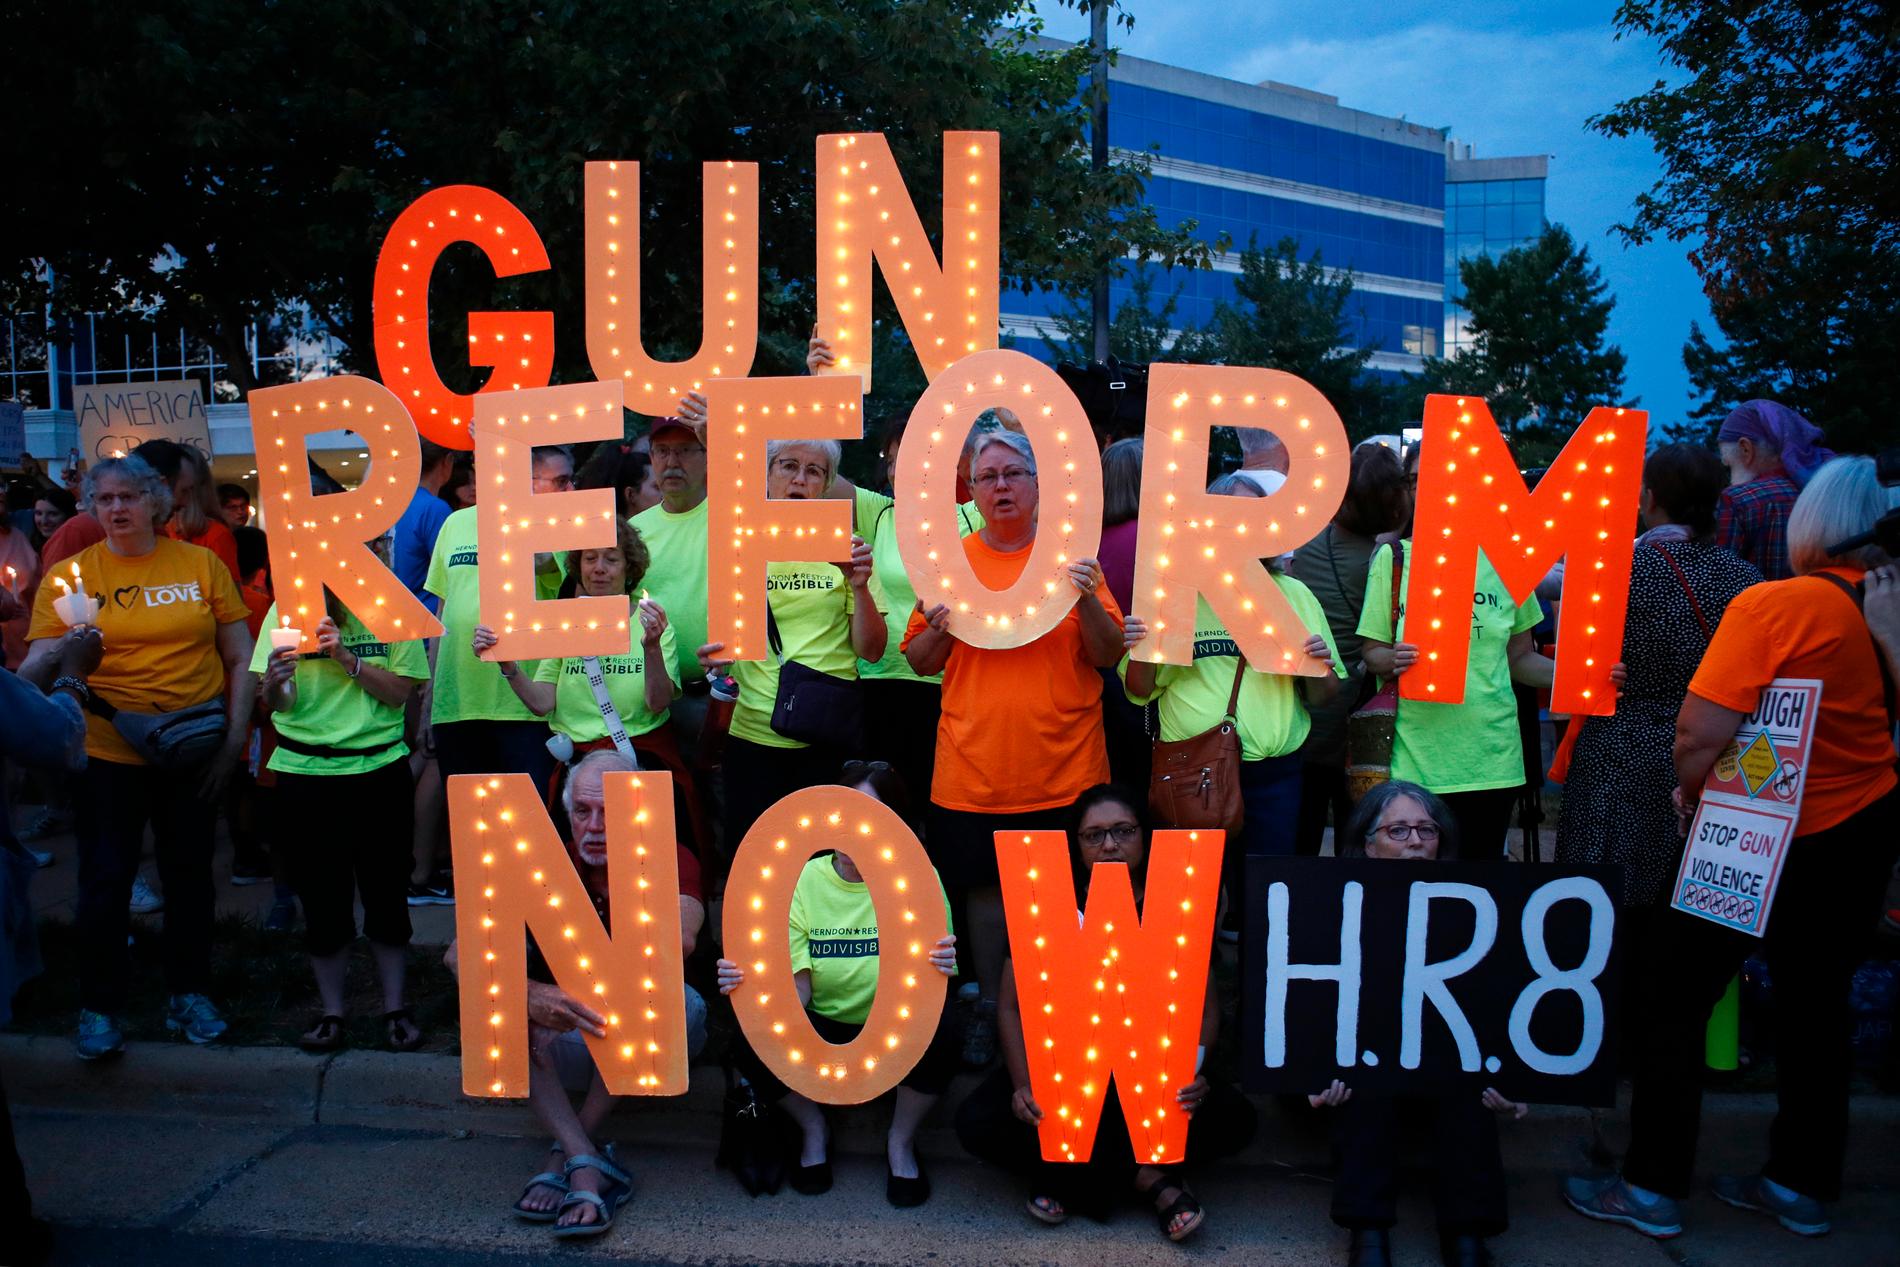 En manifestation för skärpta vapenlagar utanför vapenlobbyorganisationen NRA:s högkvarter i Fairfax i Virginia.